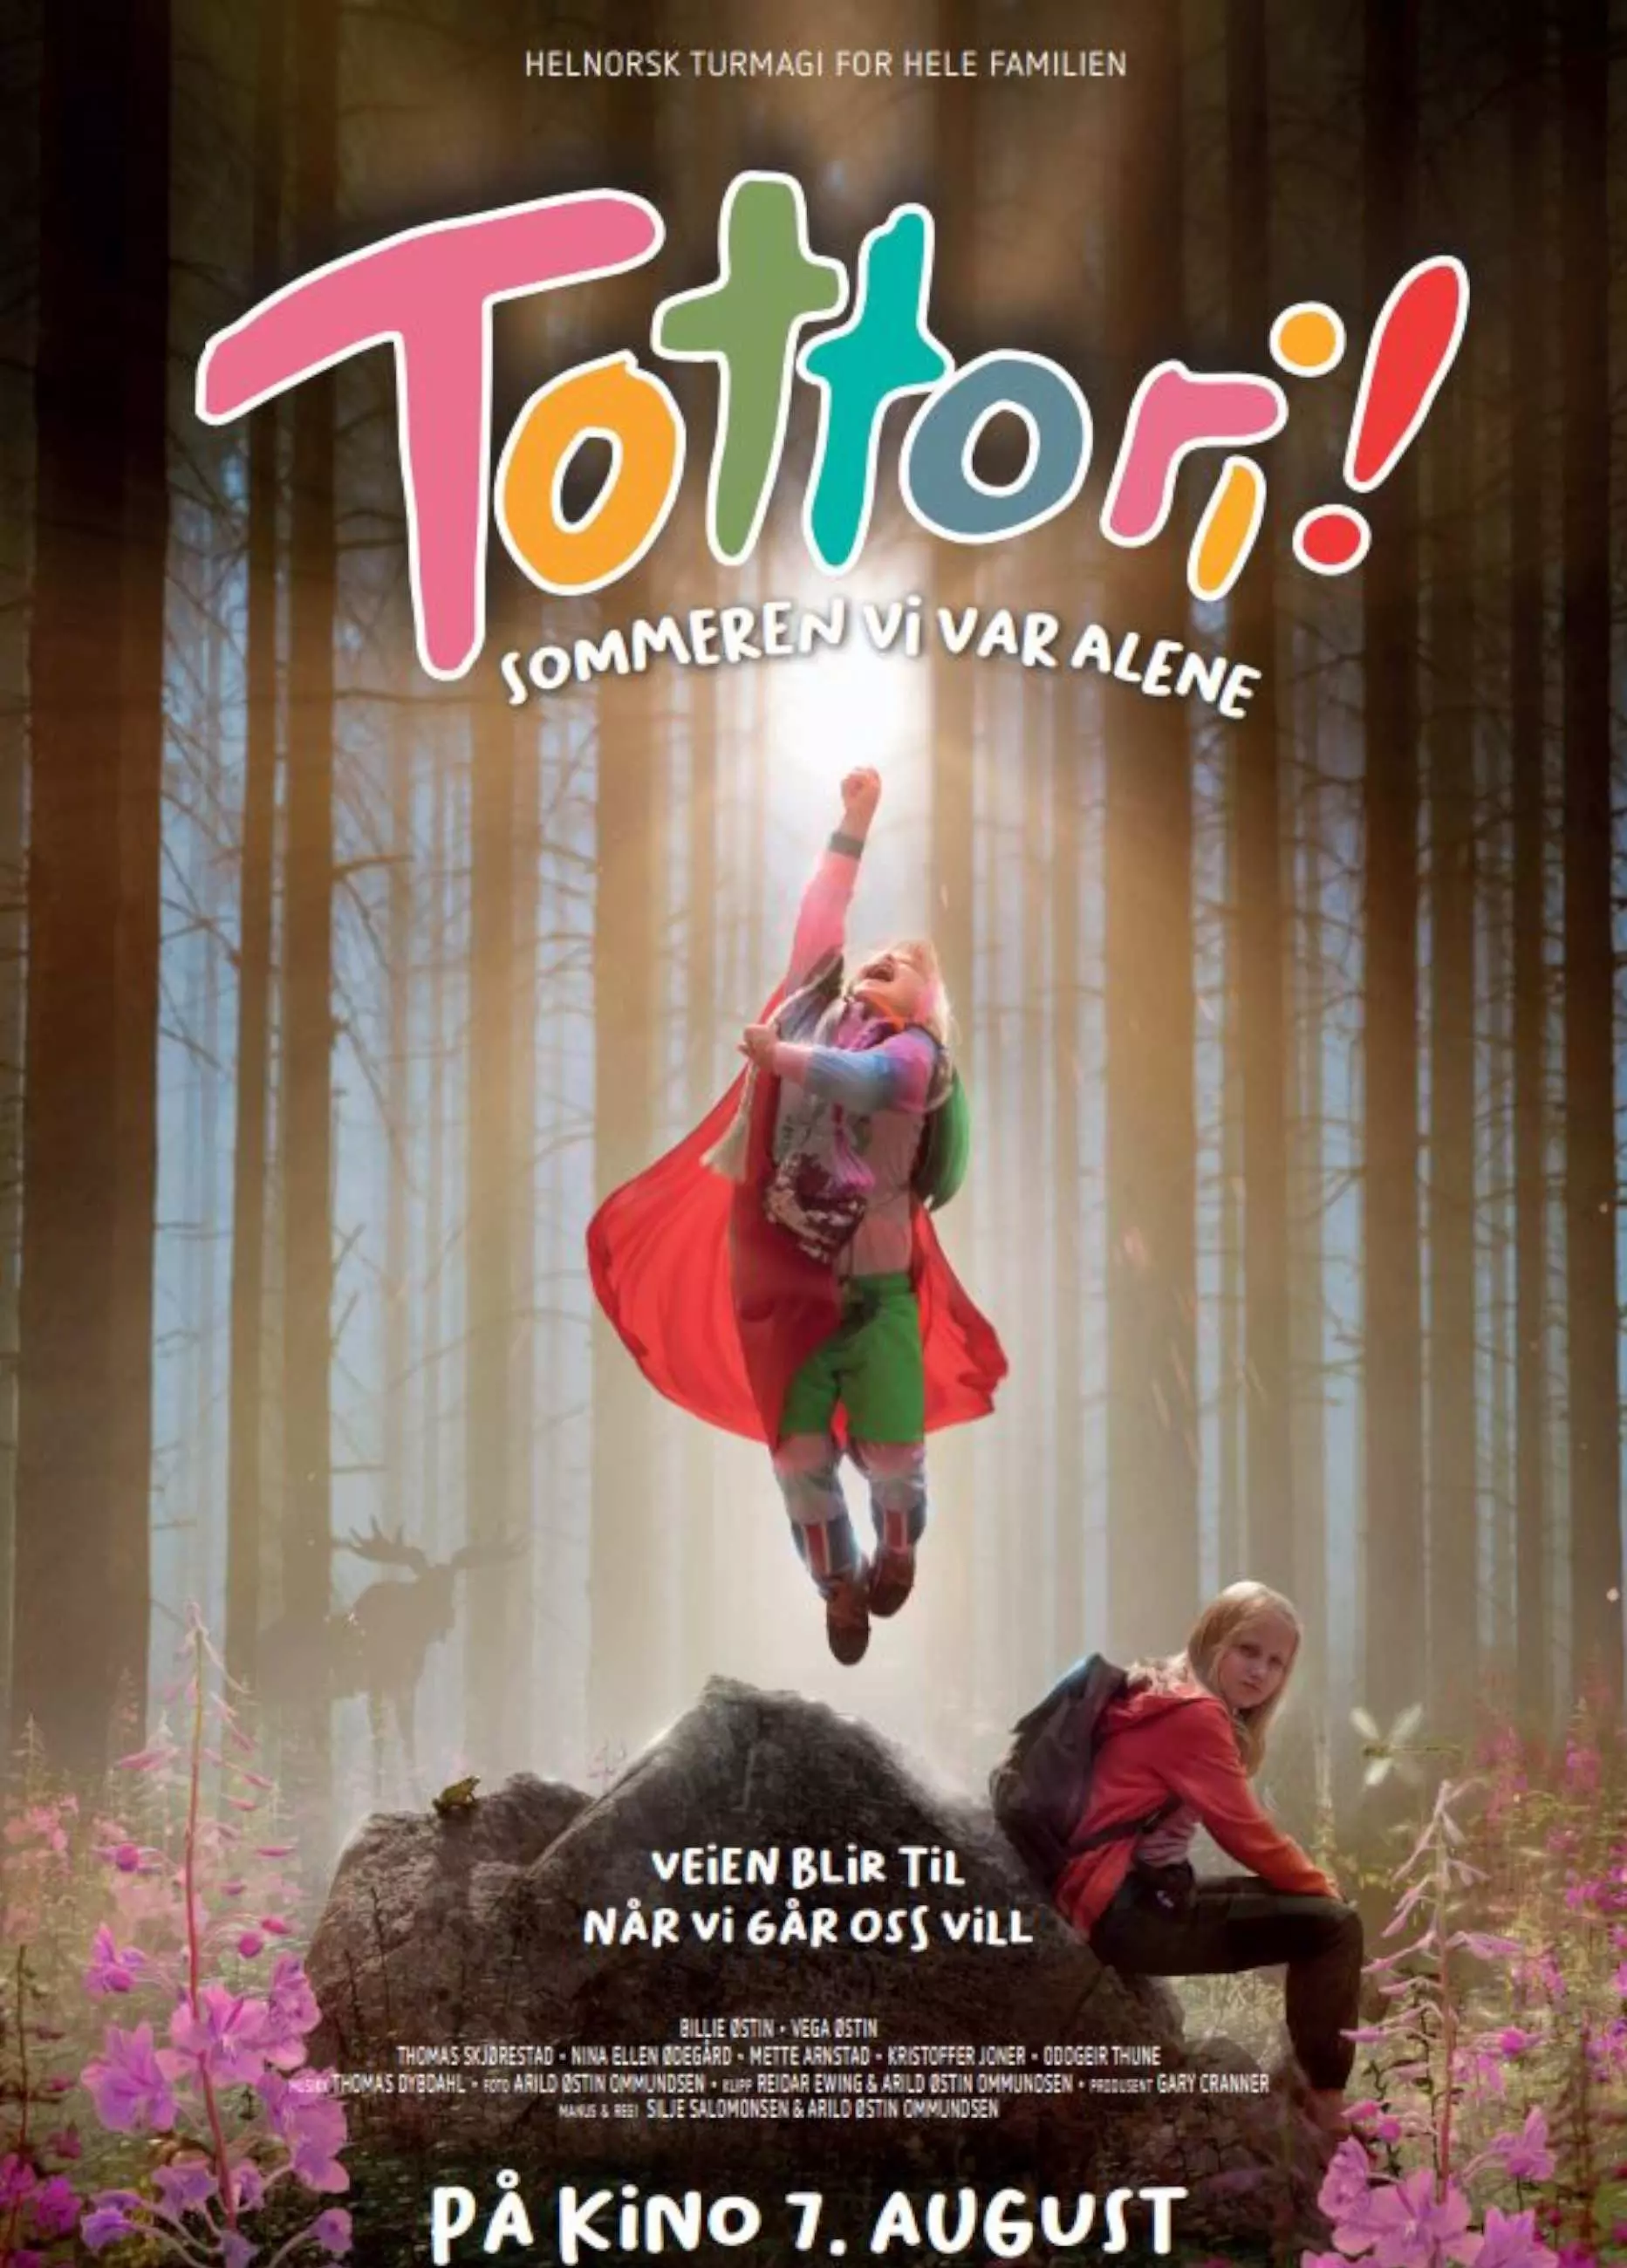 Filmplakat for "Tottori! Sommeren vi var alene". Plakaten har en fargerik og leken skrifttype for tittelen, og viser to barn i en skog. Hun ene svever eller hopper høyt opp fra en stein. Skogen rundt dem har høye trær med lys som strømmer gjennom toppene. Det er også rosa blomster på bakken.